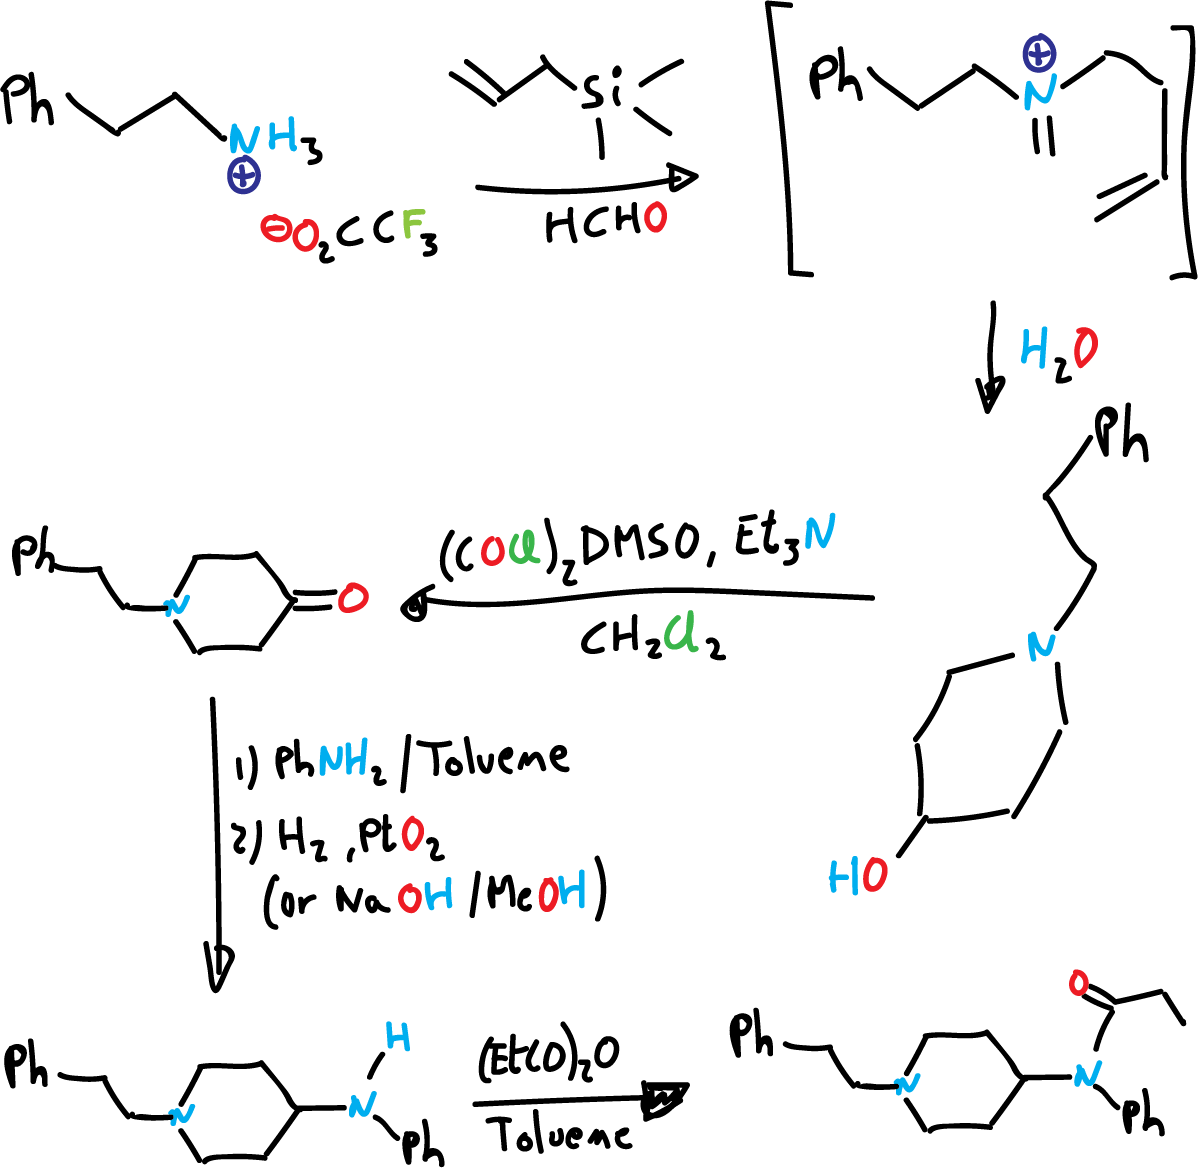 total fentanyl synthesis PJMPHNIQZUBGLI-UHFFFAOYSA-N